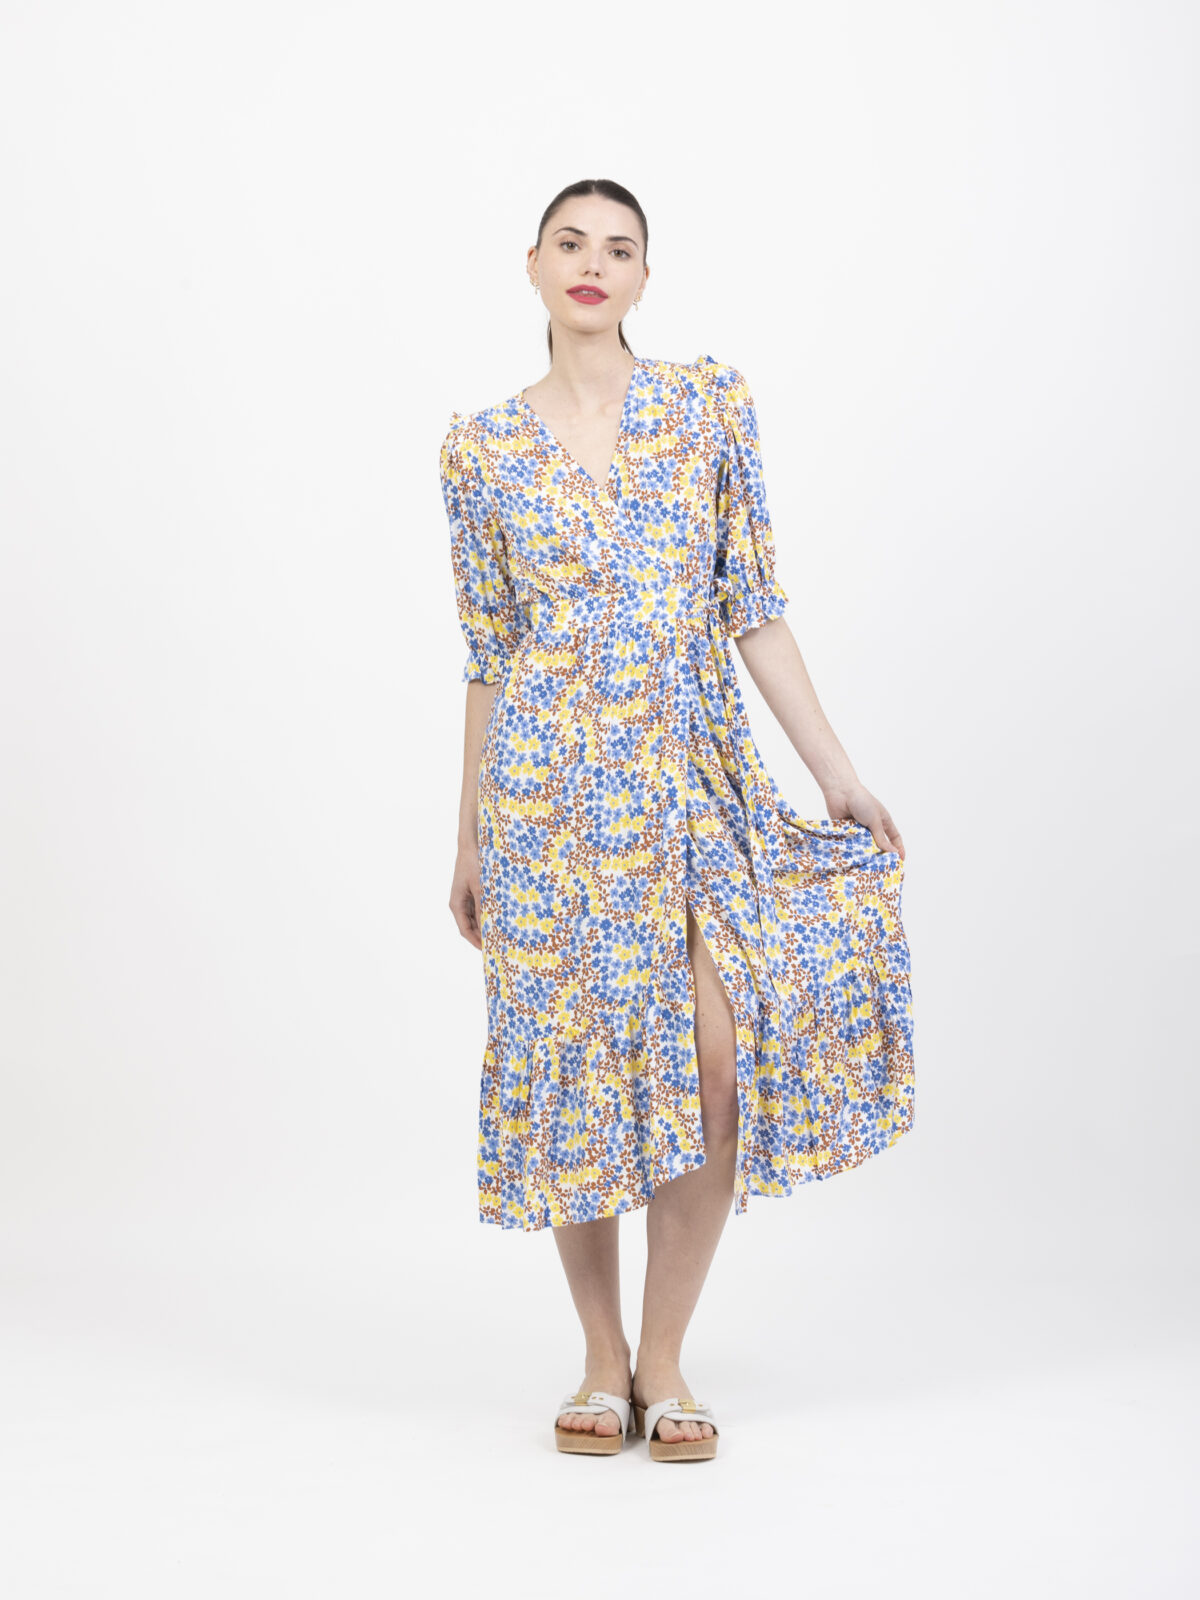 suncoo-claire-floral-dress-matchboxathens-shop-buy-athens-wrap-ruffles